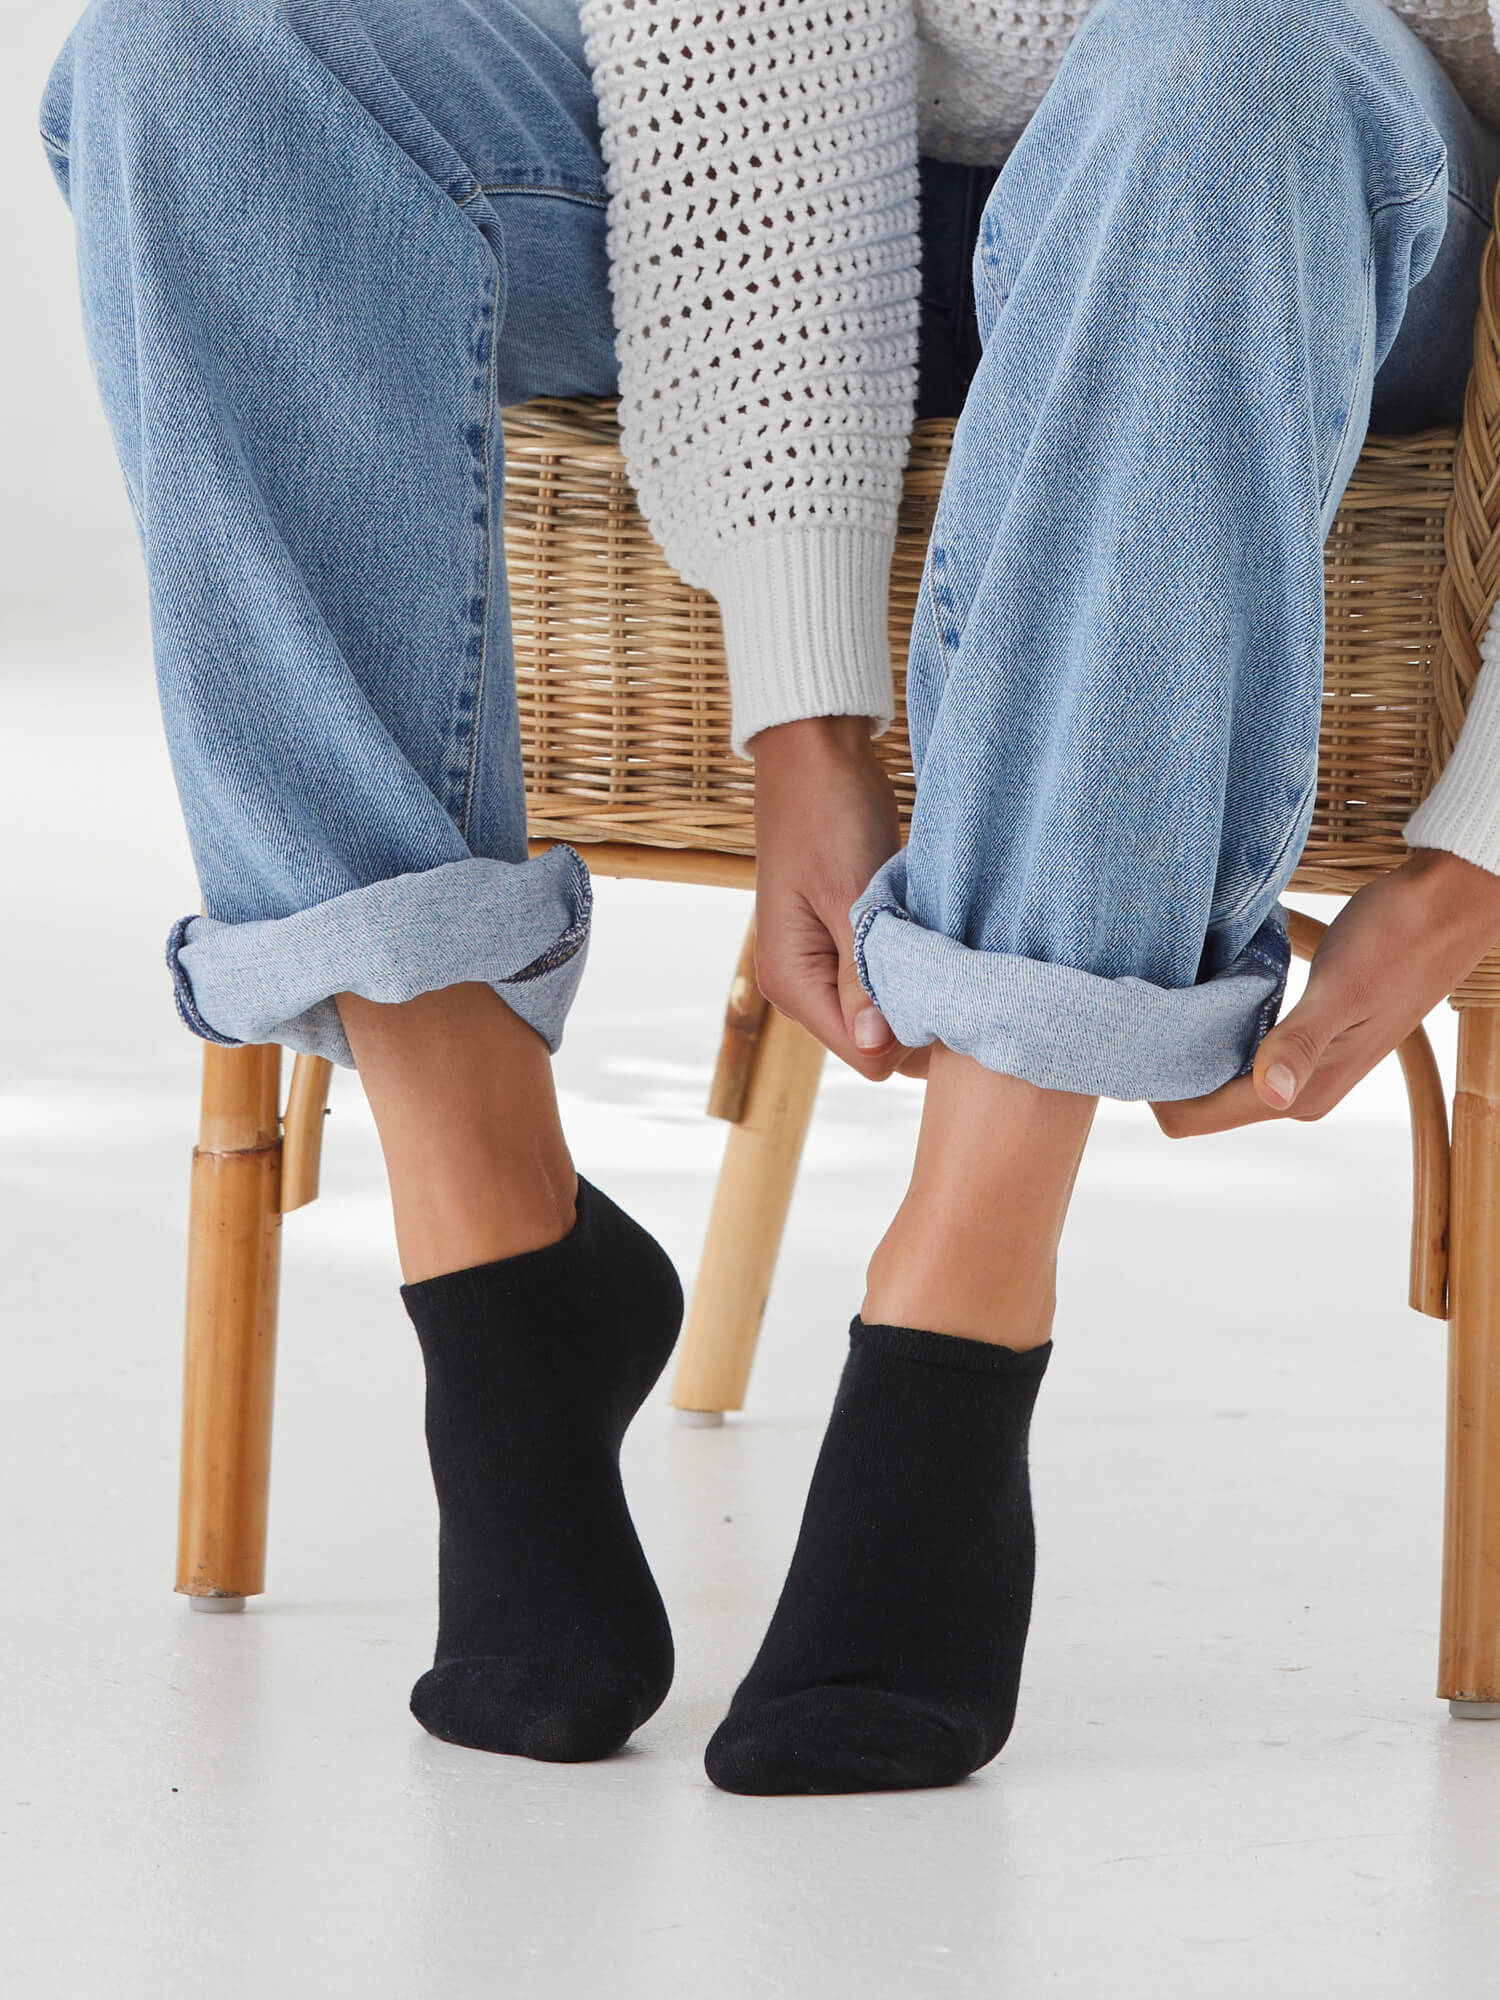 3 Pack Ladies White Low Cut Socks - Buy Women's Socks Online